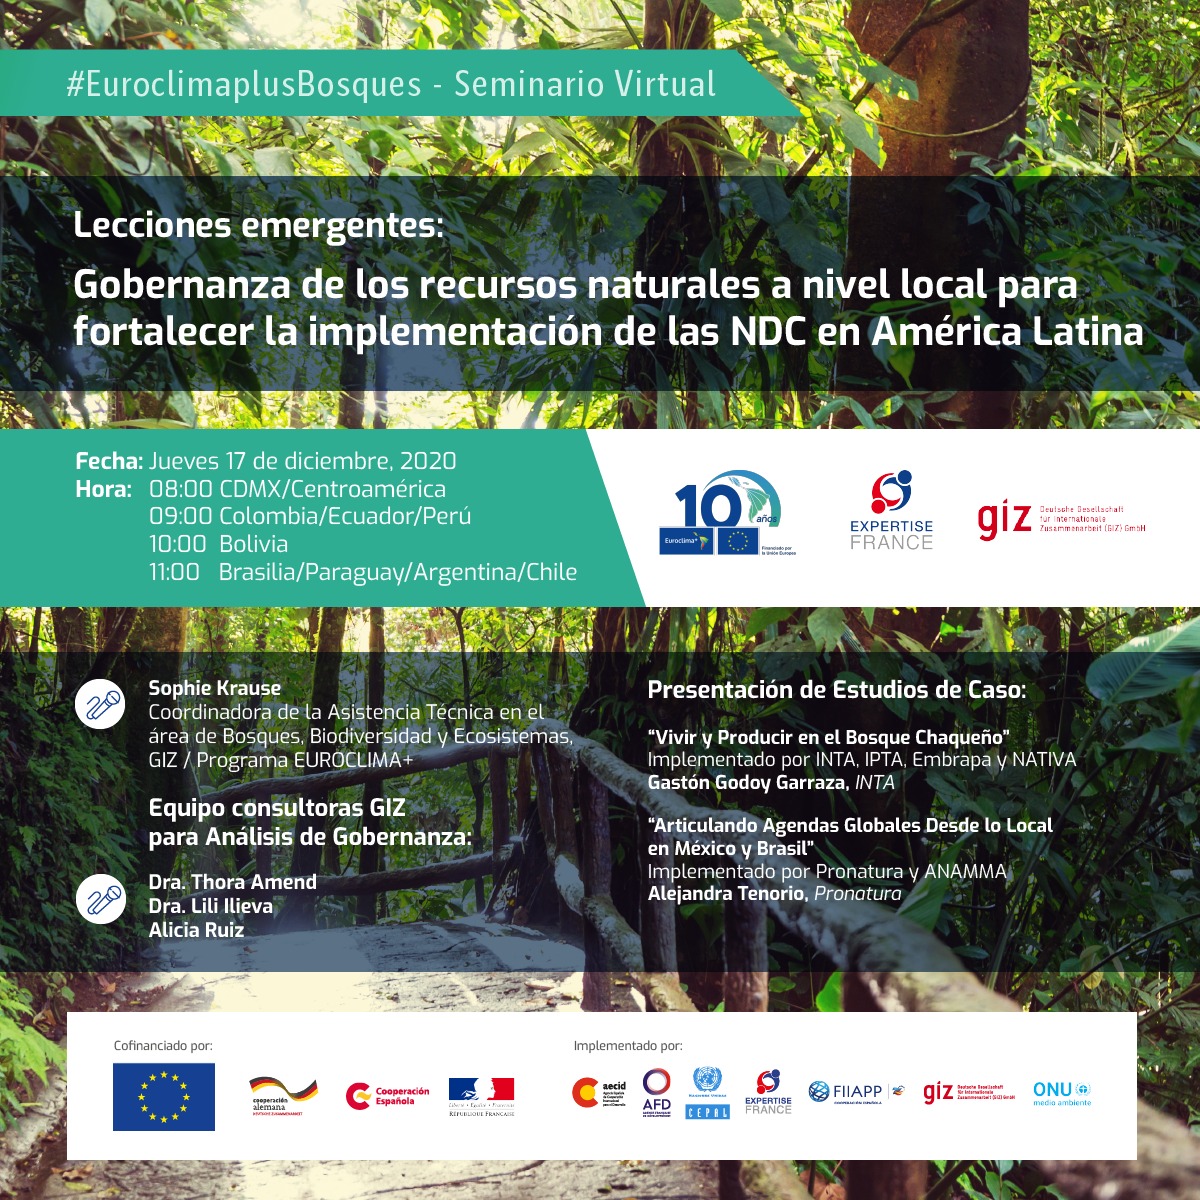 Lições emergentes: Governança de recursos naturais no nível local para fortalecer a implementação de NDCs na América Latina